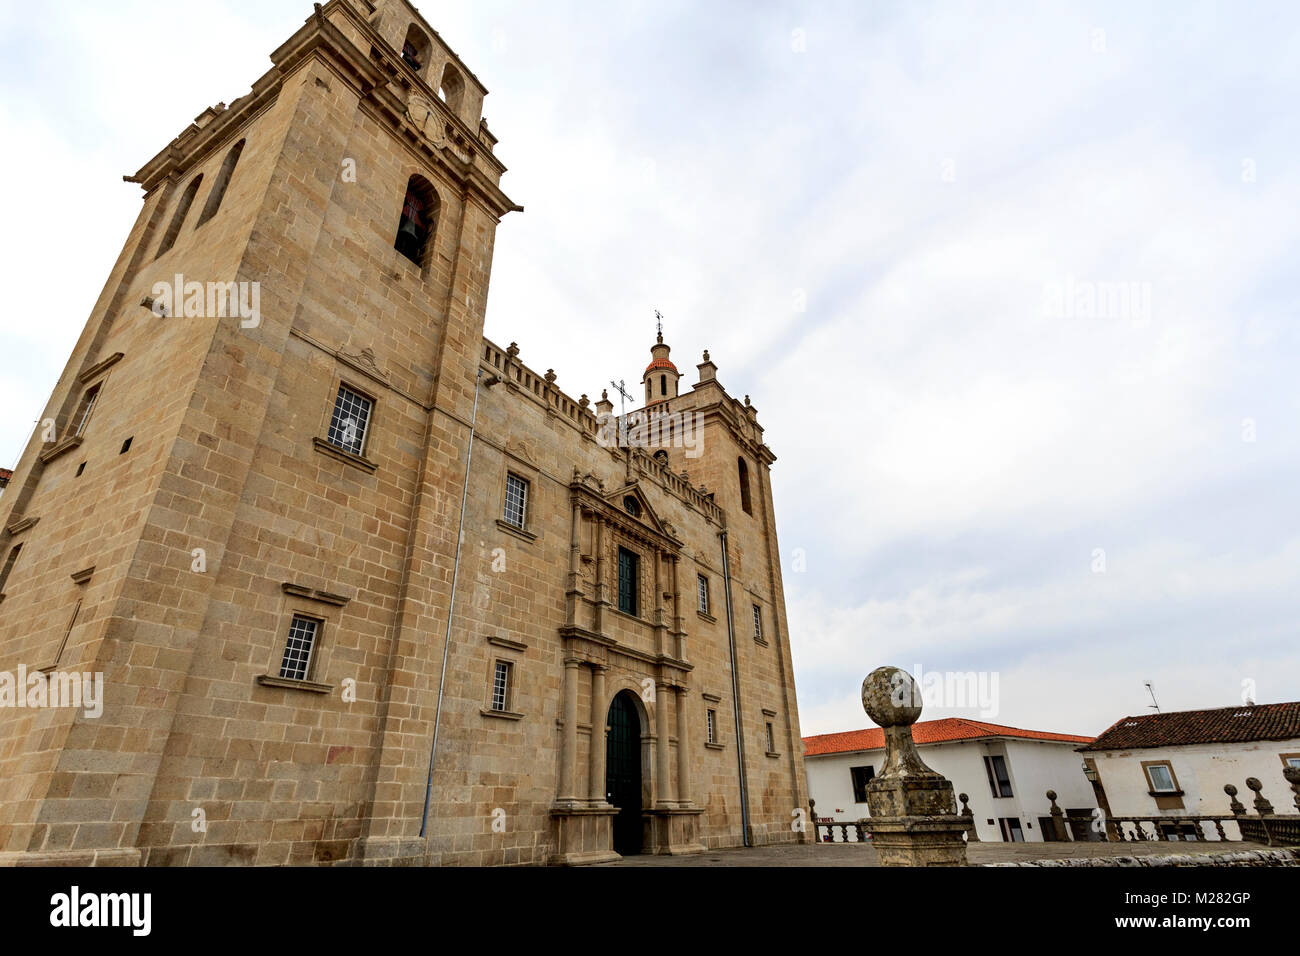 Cattedrale cattolica di stile manieristico con un'austera facciata fiancheggiata da imposte campanili su ciascun lato e sormontata da una rampa, in Miranda do Douro, Foto Stock